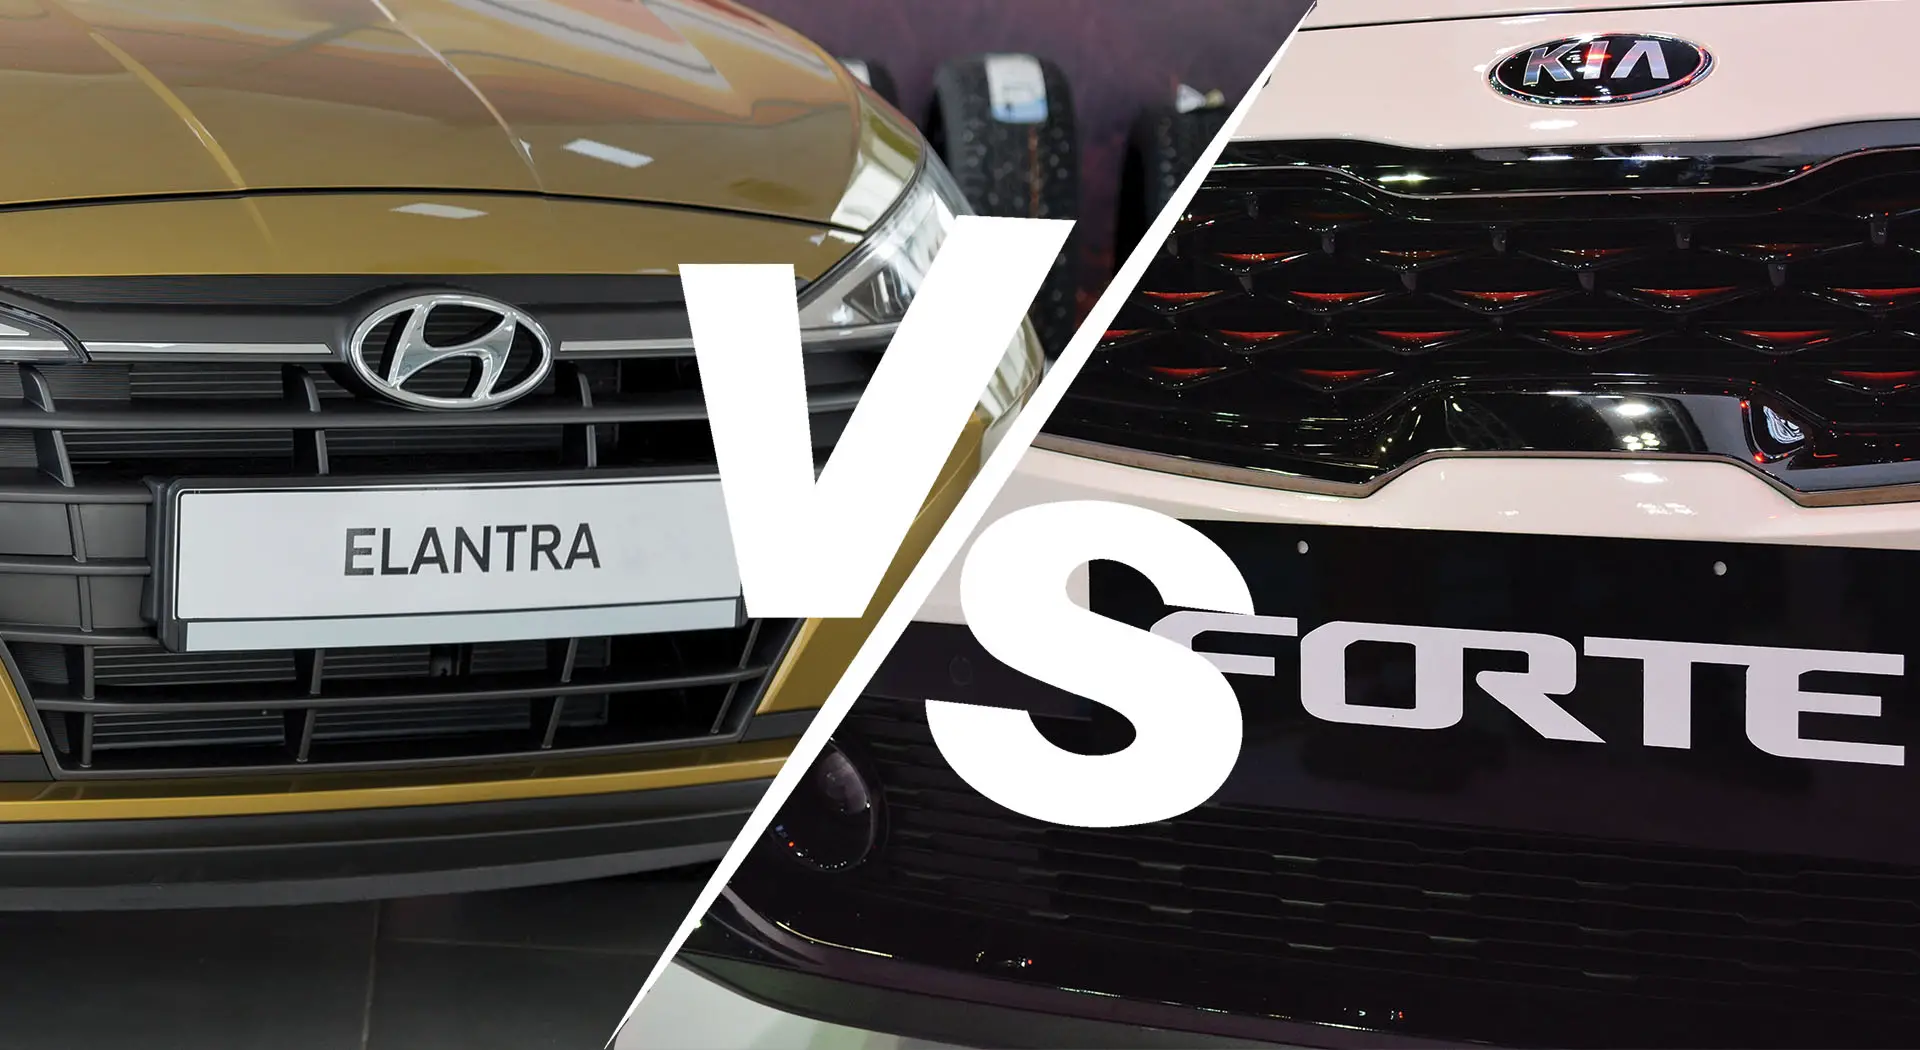 Kia Forte vs. Hyundai Elantra